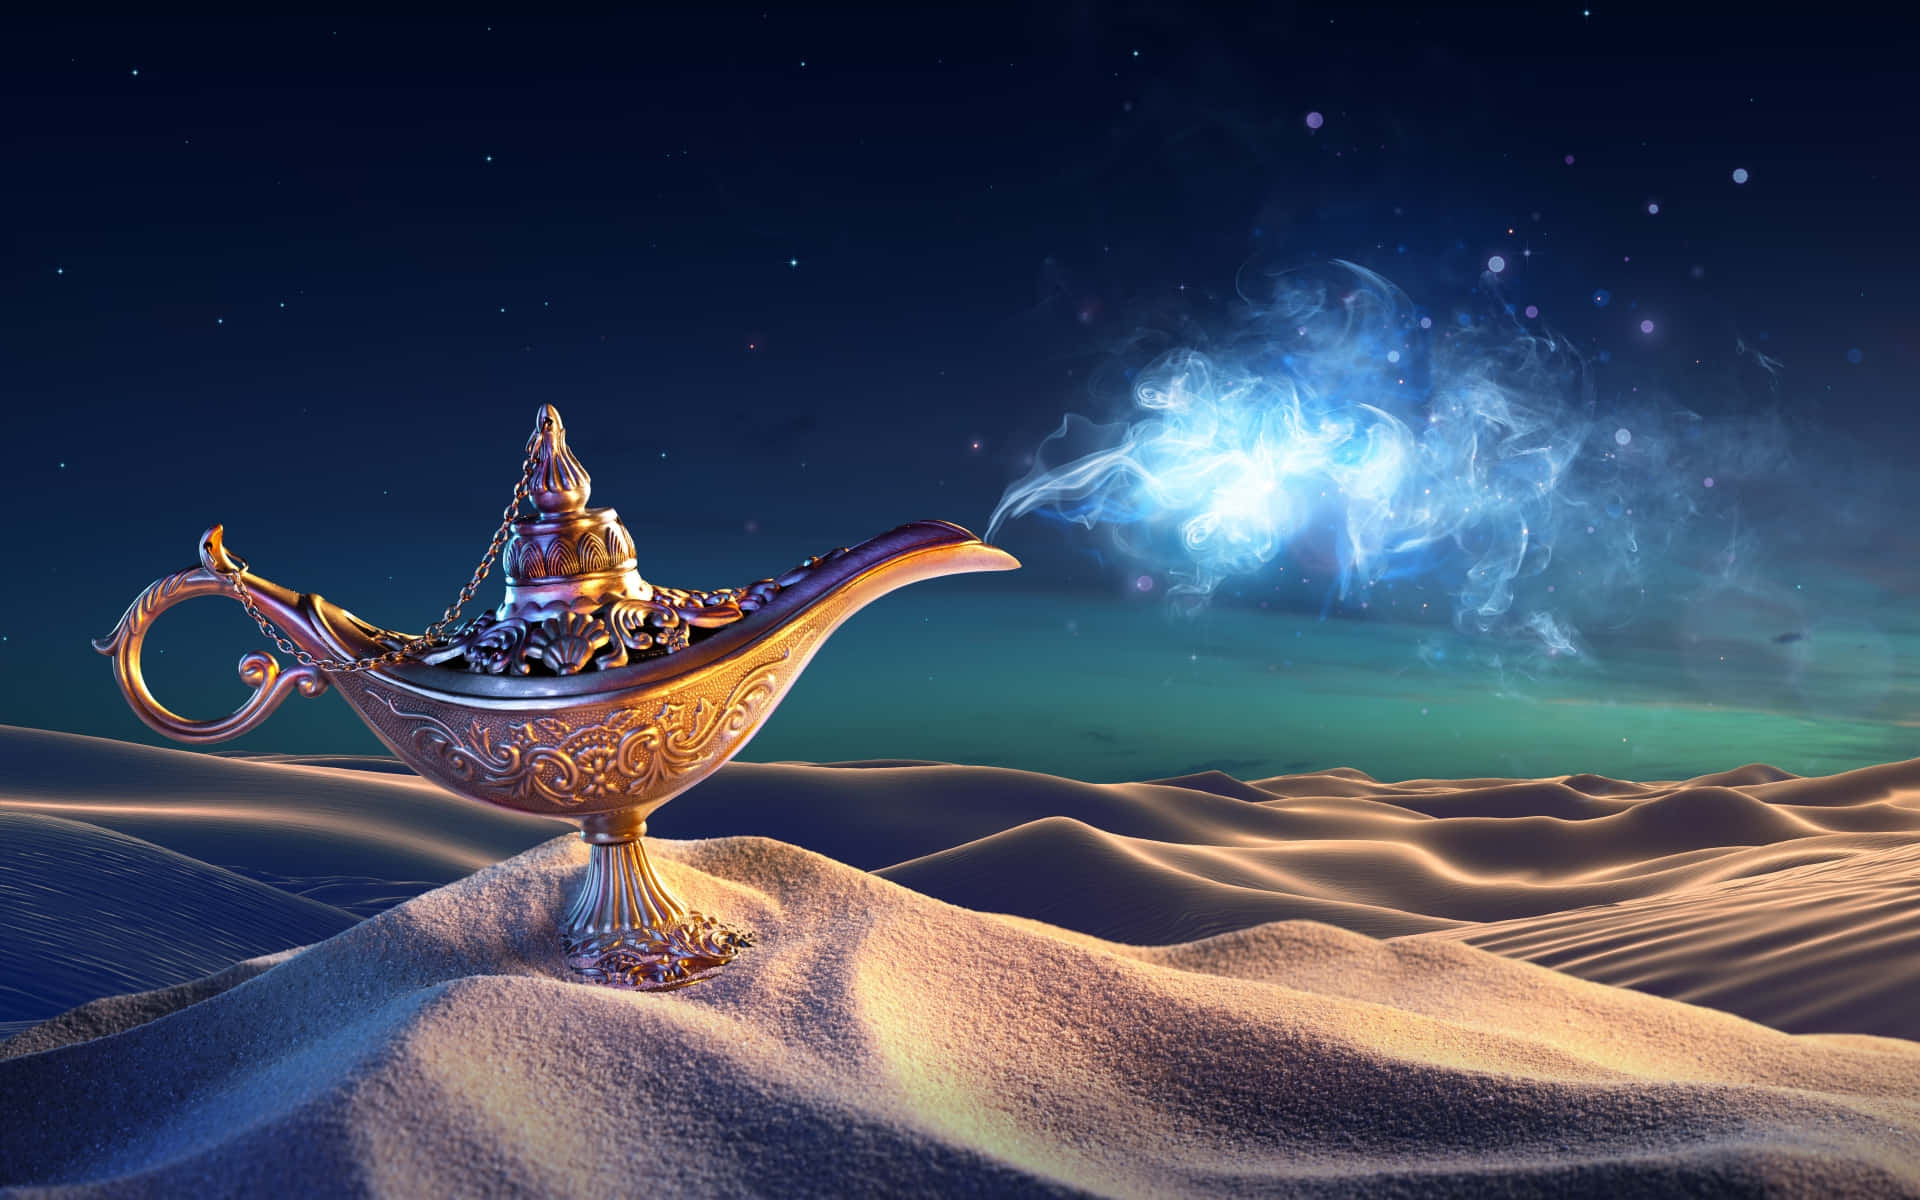 Aladdinupptäcker En Helt Ny Värld